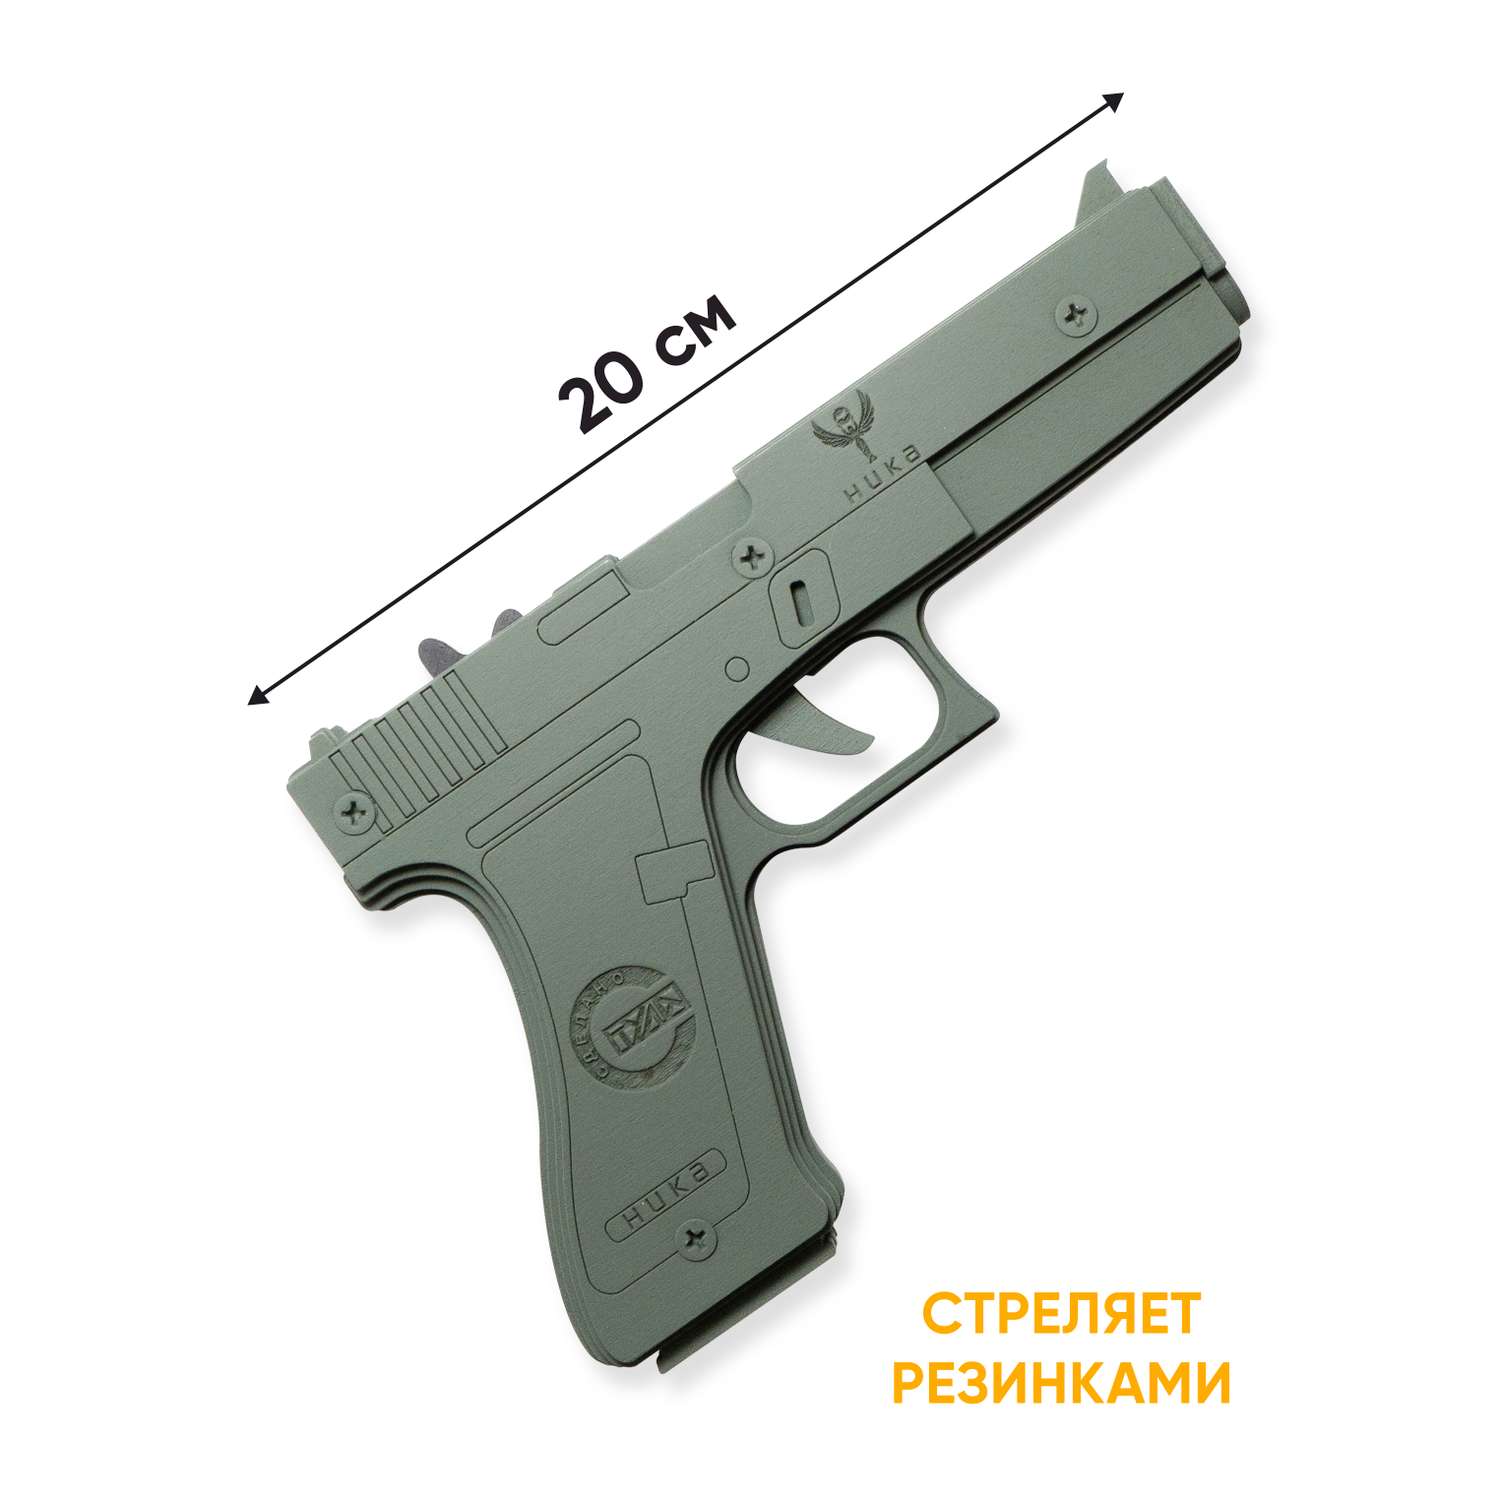 Резинкострел НИКА игрушки Пистолет Glock 18C (G) в картонной упаковке - фото 1